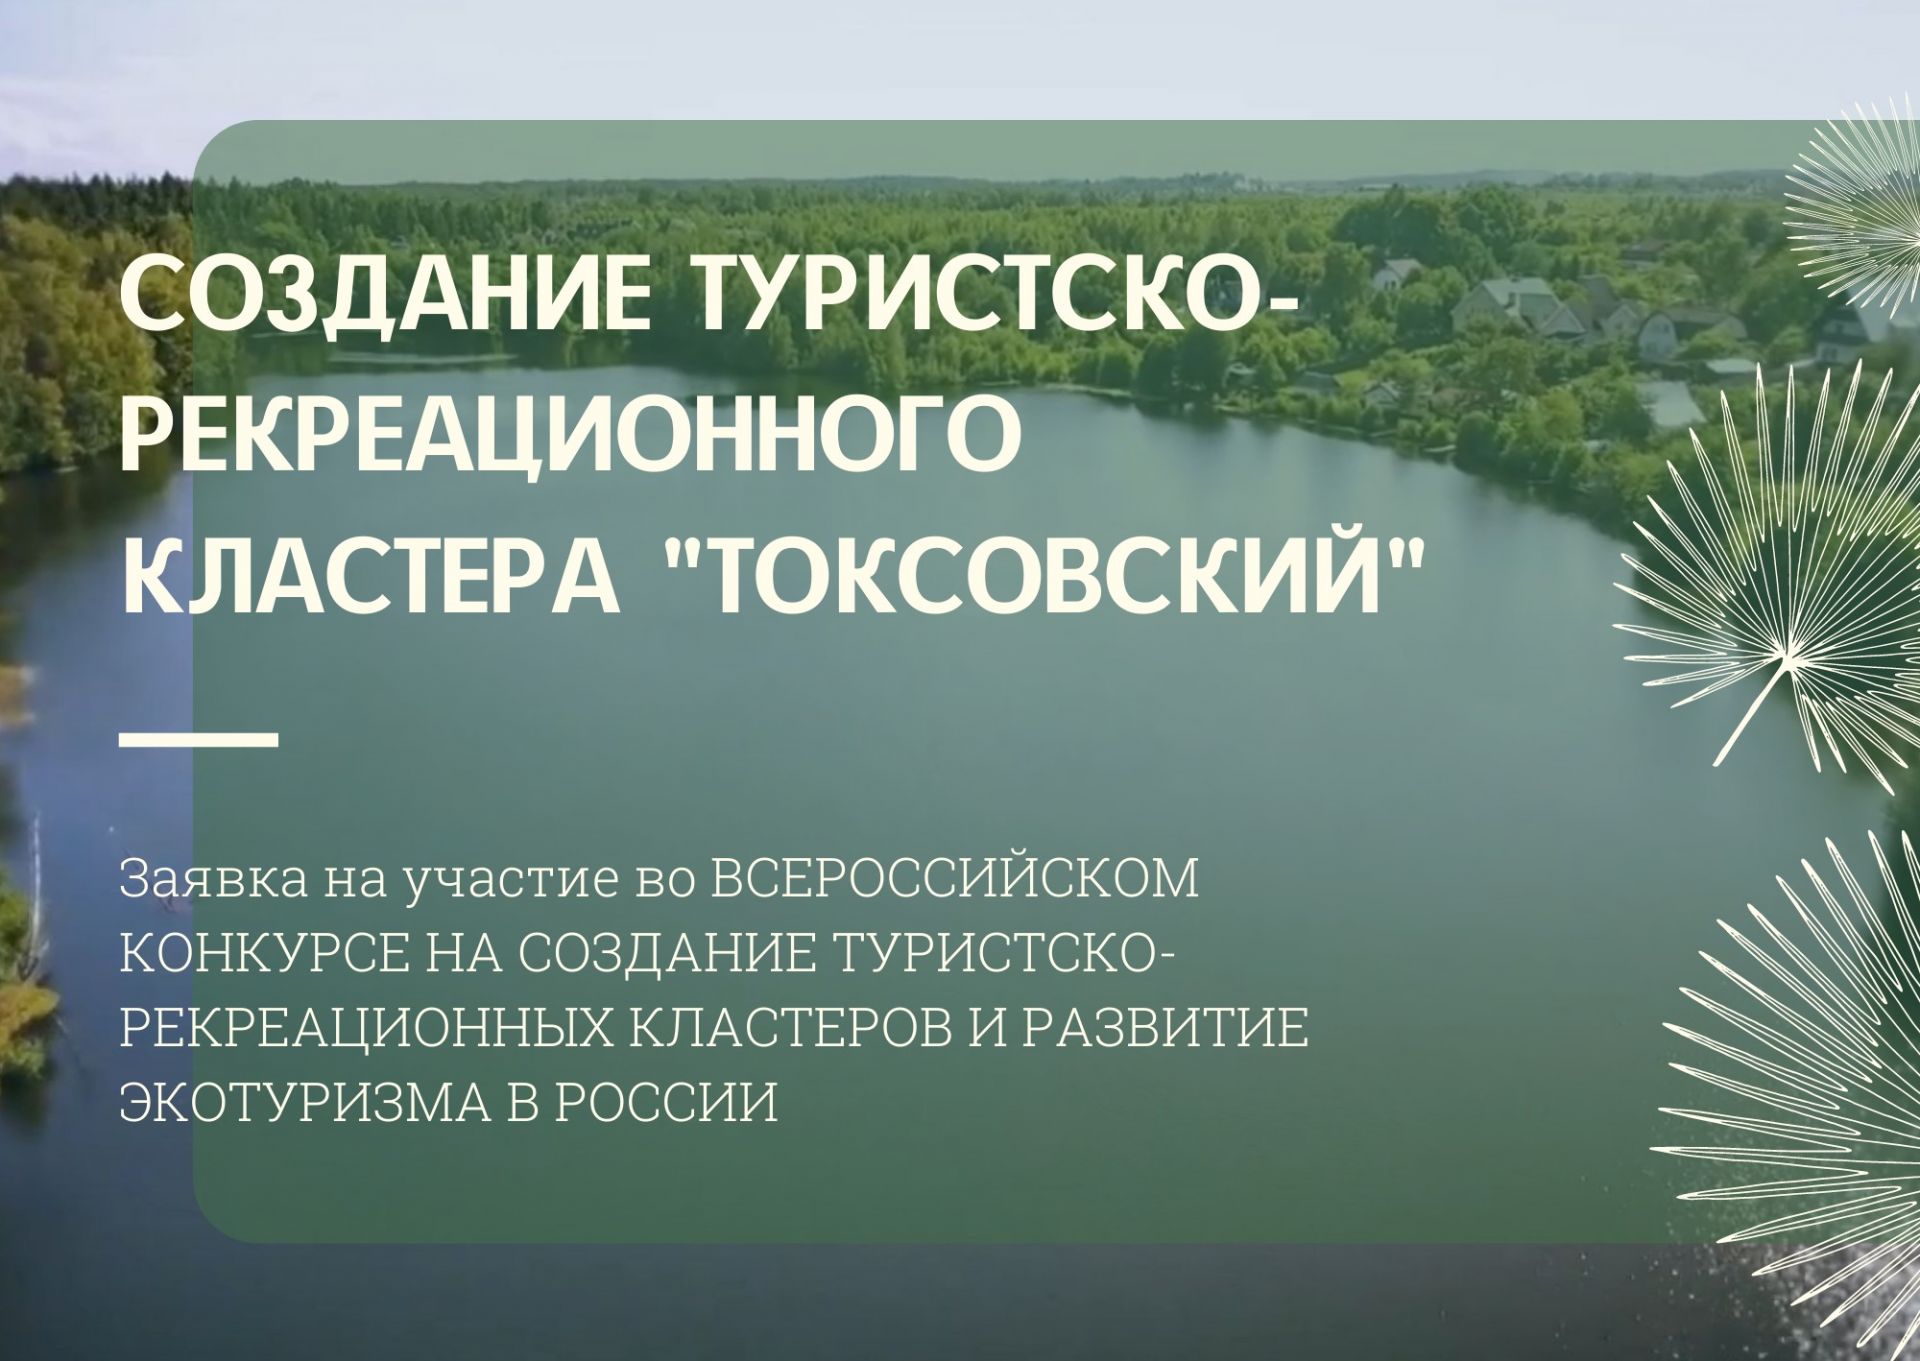 ВООП подала заявку на участие в первом конкурсе по созданию туристско-рекреационных кластеров